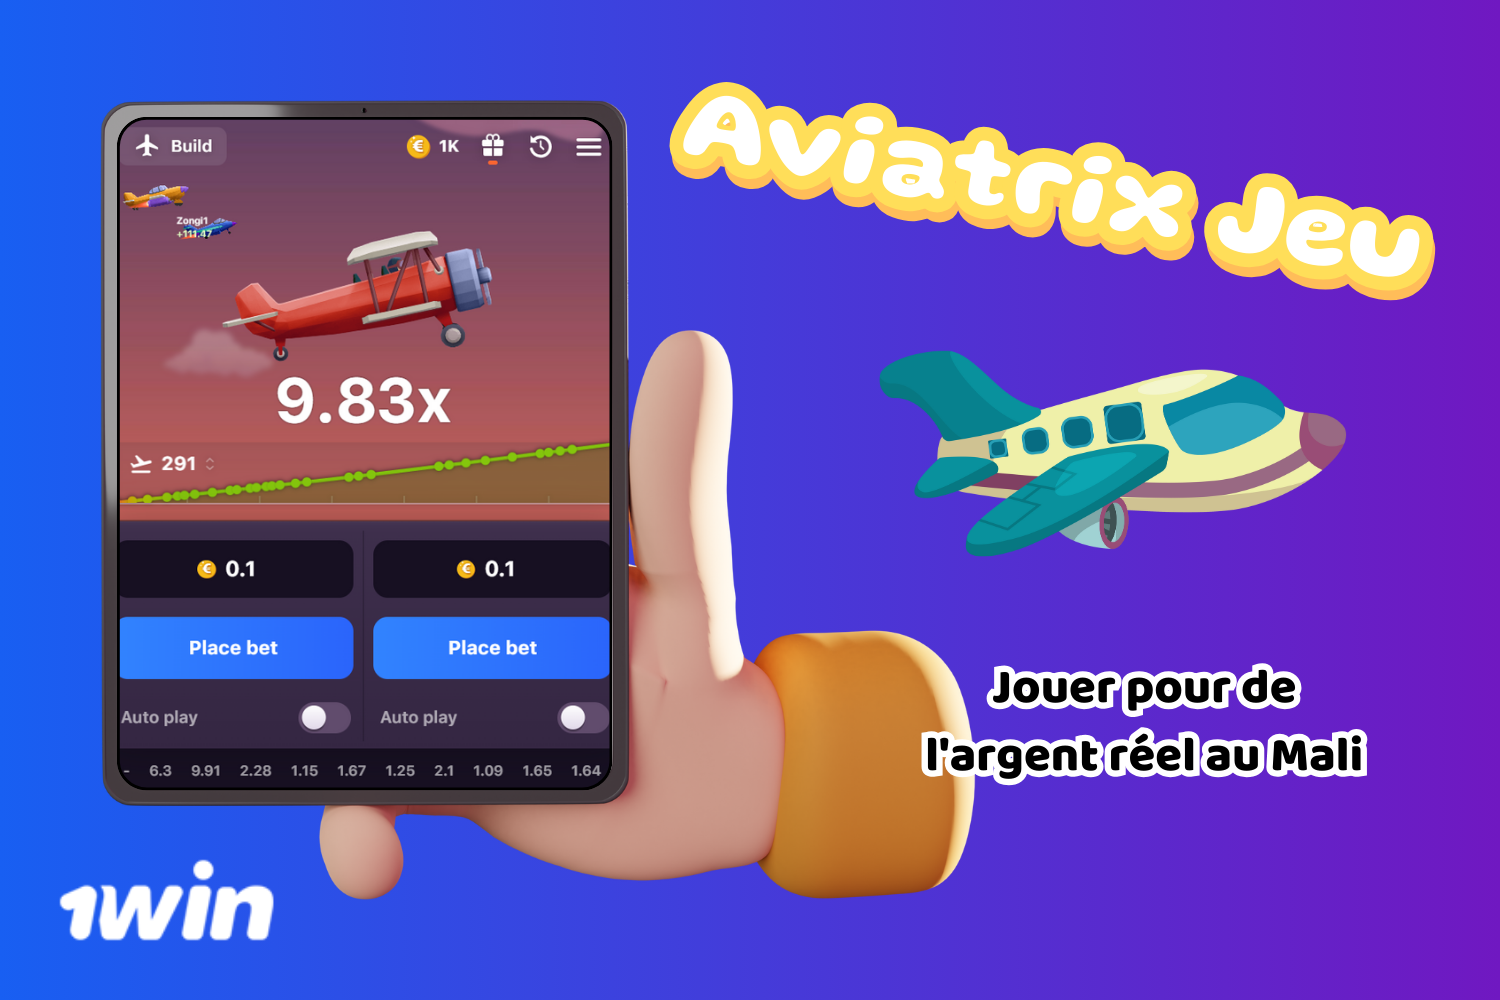 Aviatrix est un jeu NFT Crash très populaire au Mali où vous pouvez gagner de l'argent réel.